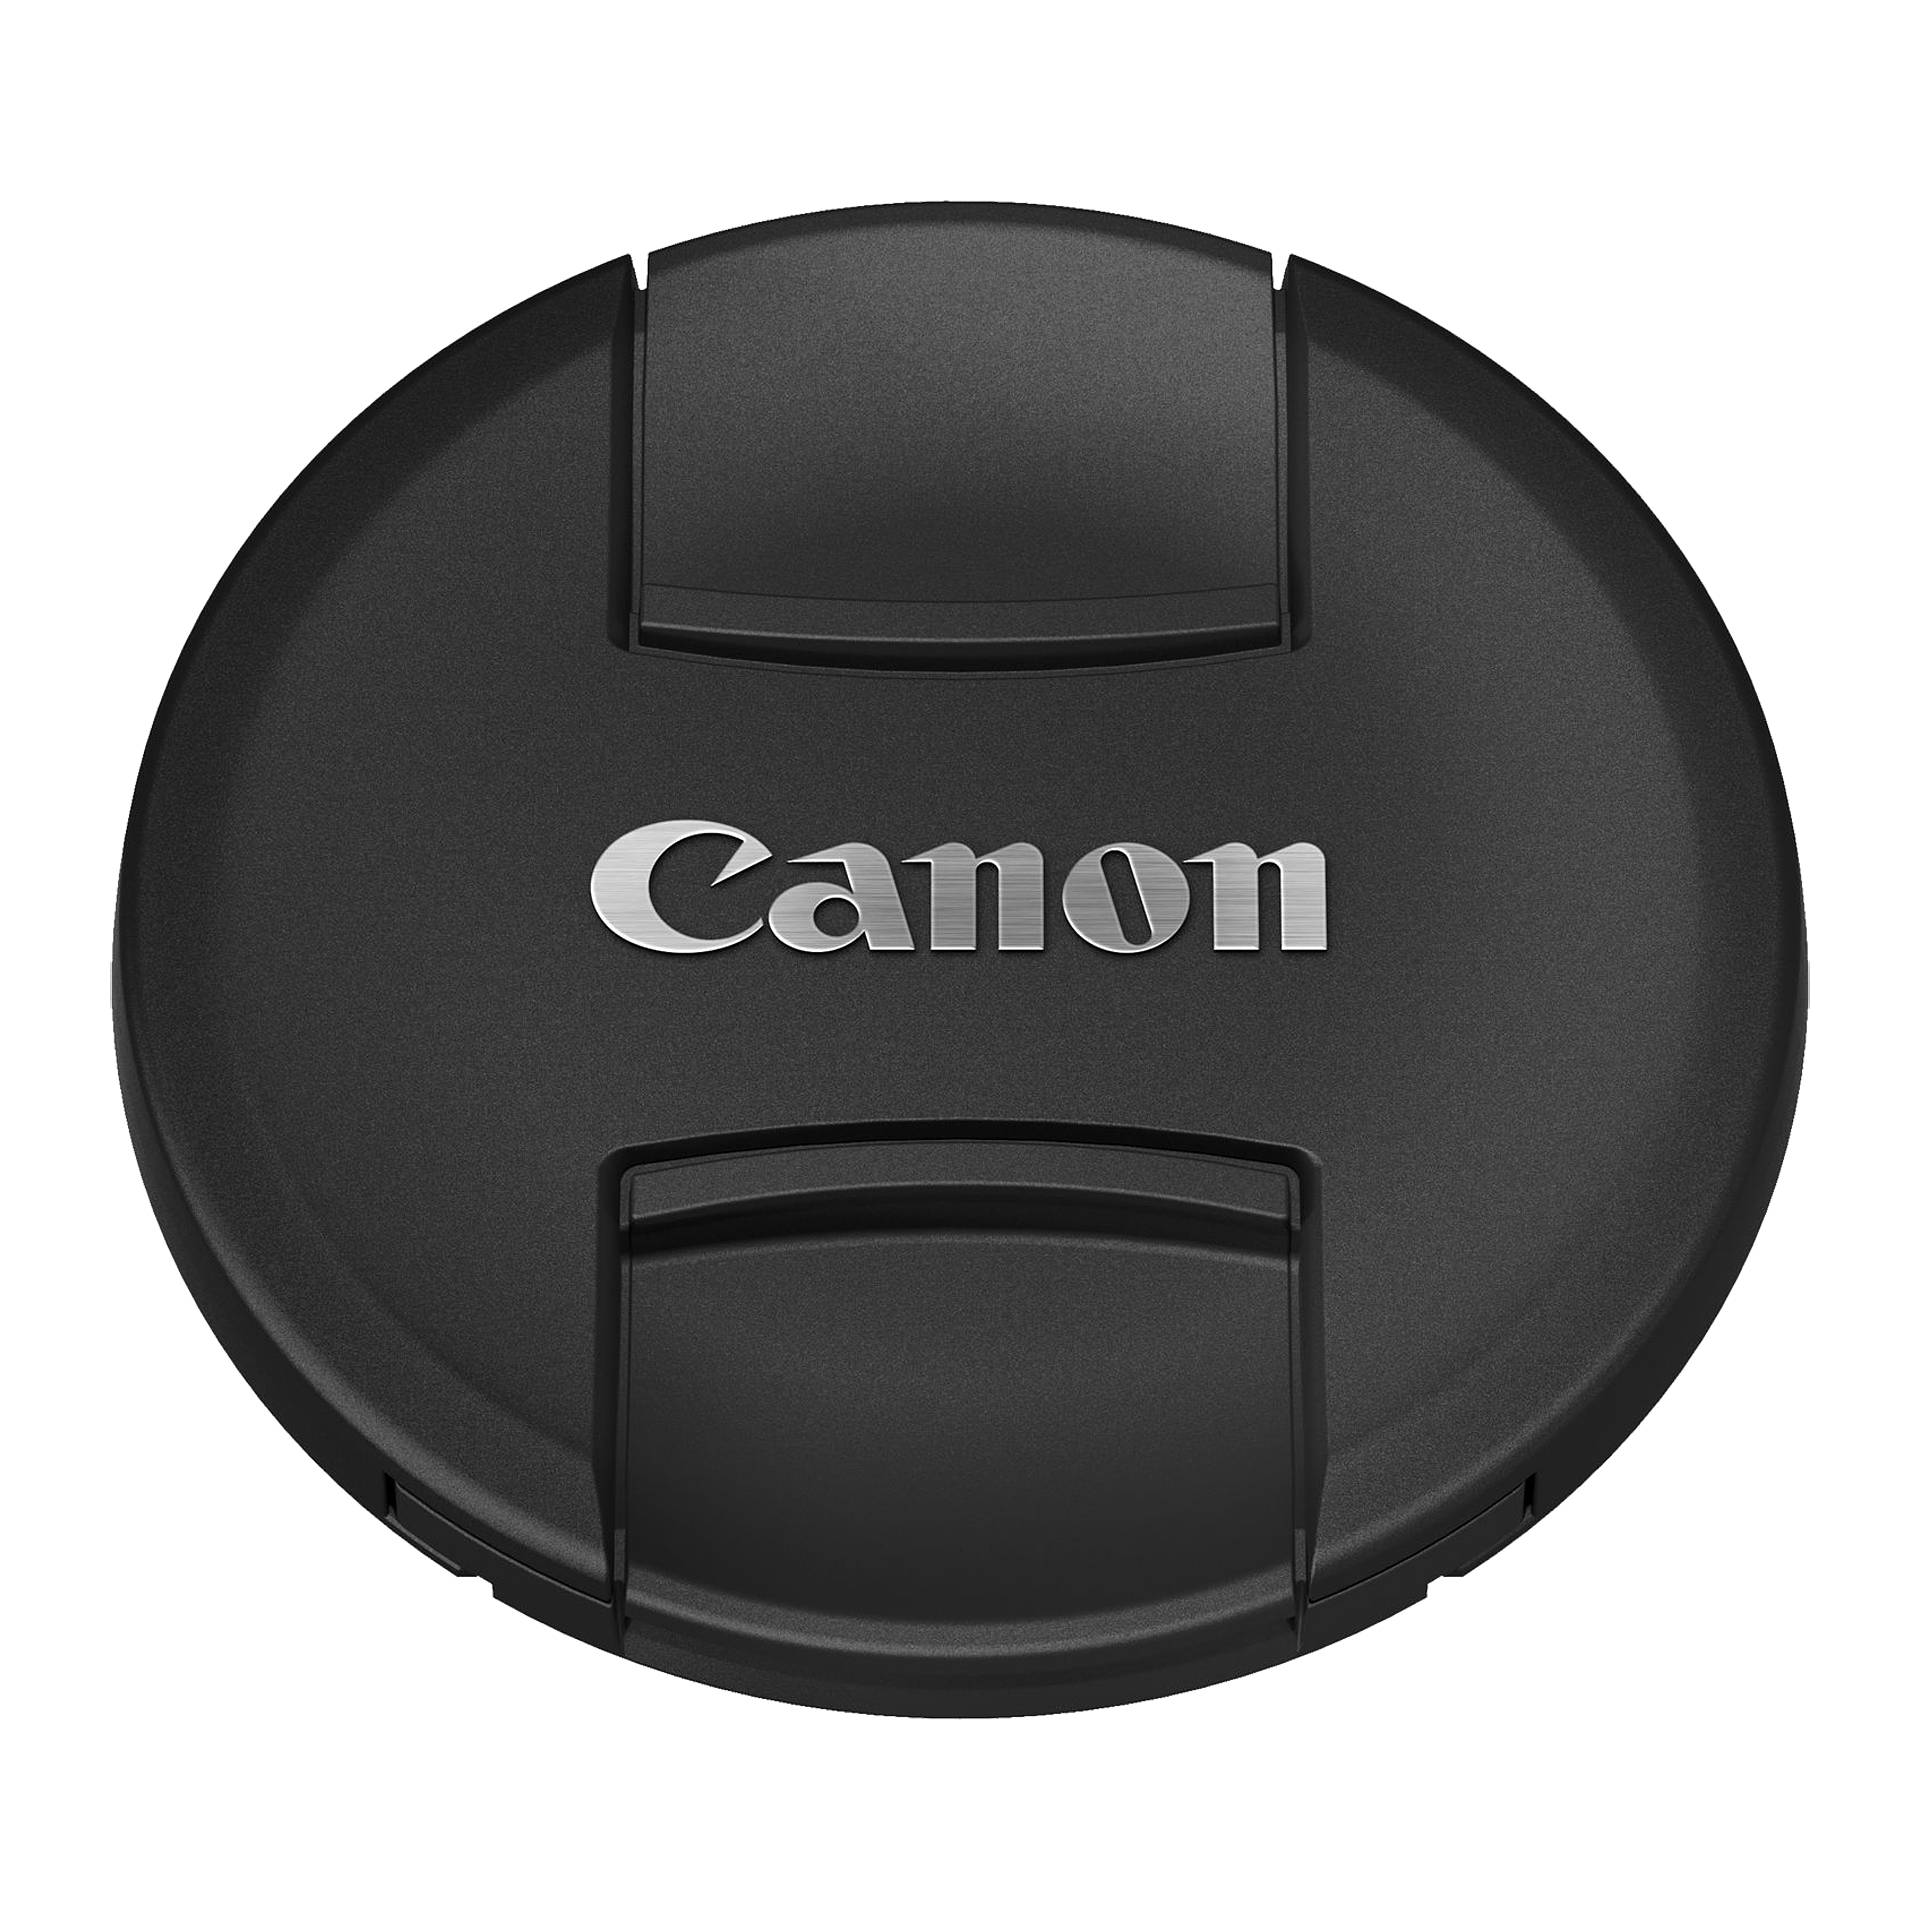 Canon E-95 Objektivdeckel